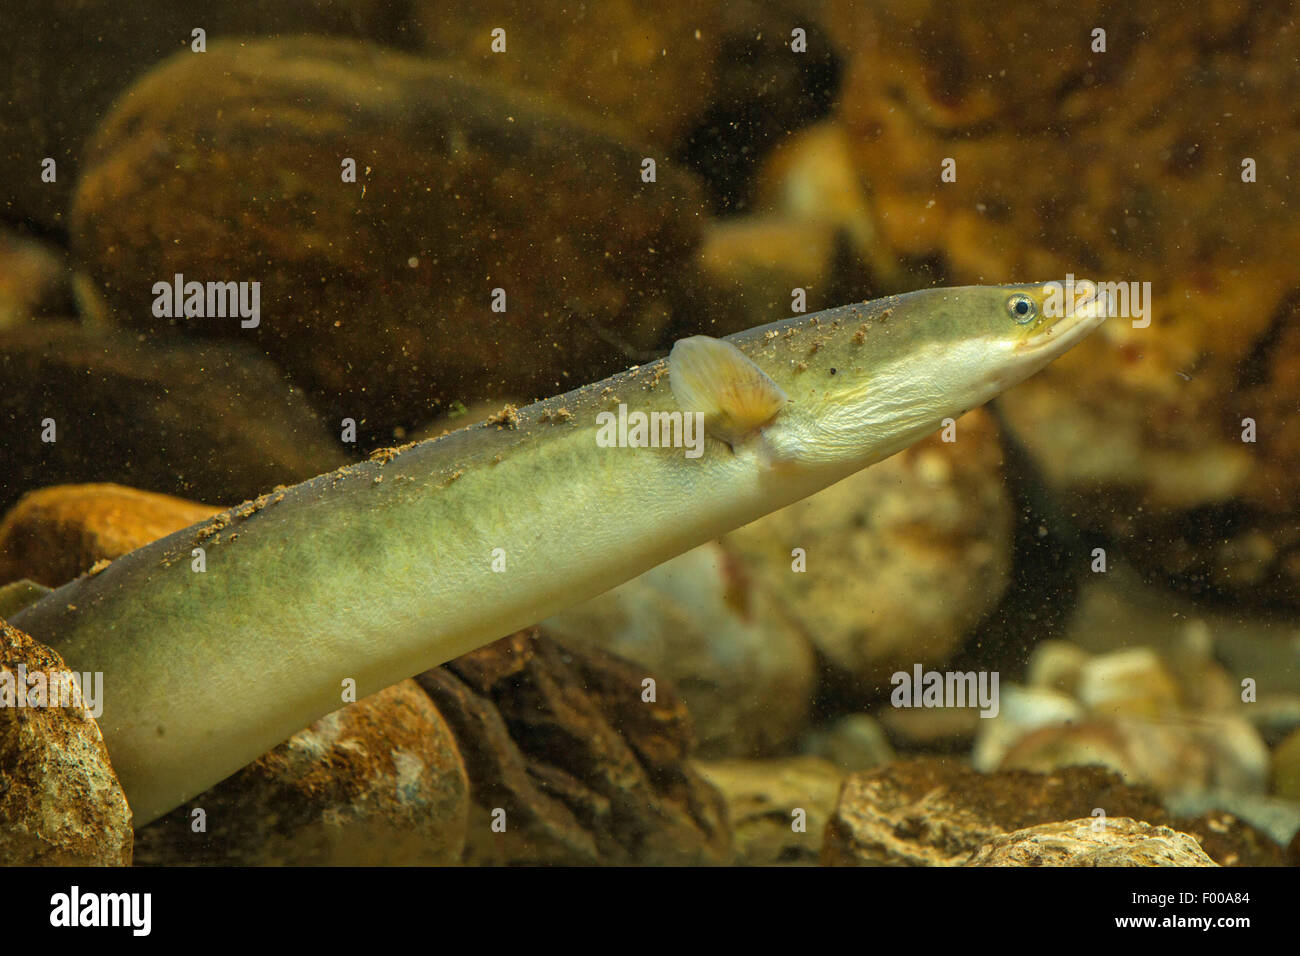 eel, European eel, river eel (Anguilla anguilla), peering between pebbles, Germany Stock Photo